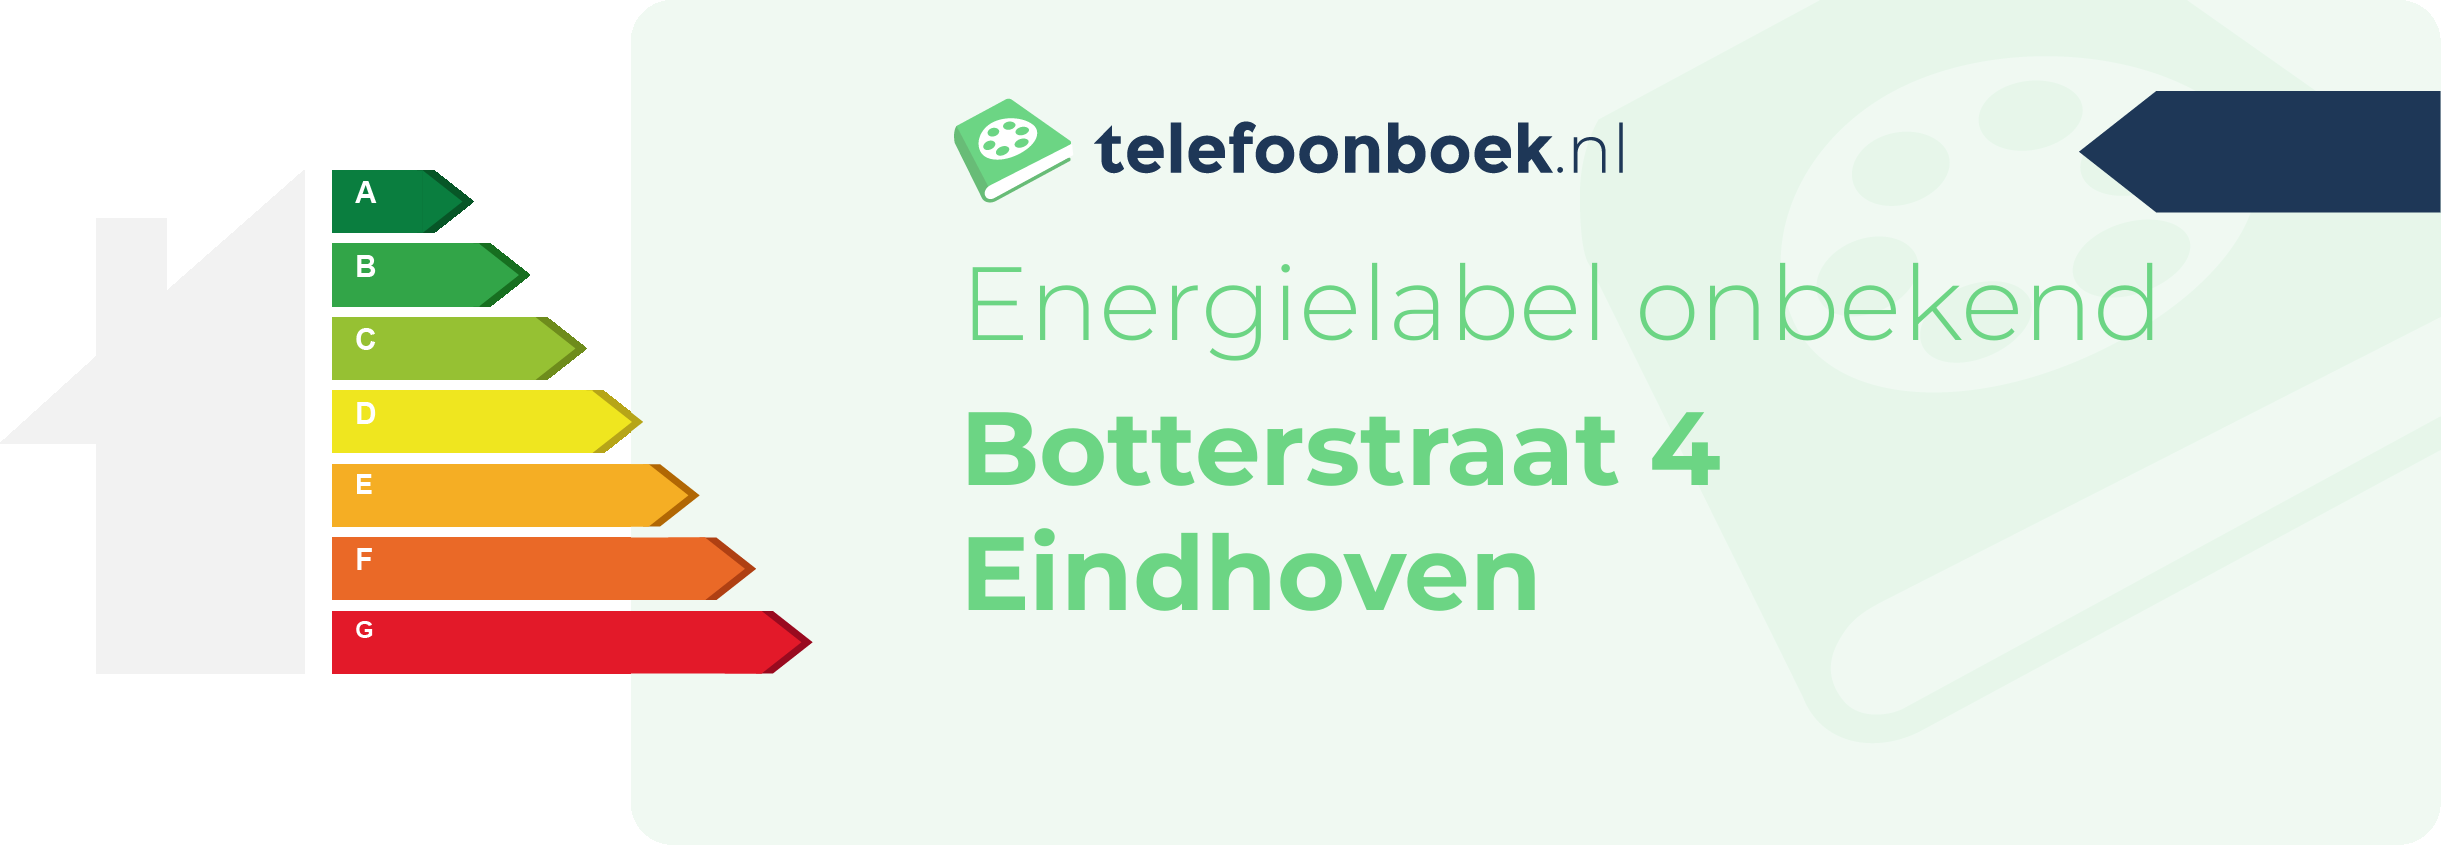 Energielabel Botterstraat 4 Eindhoven